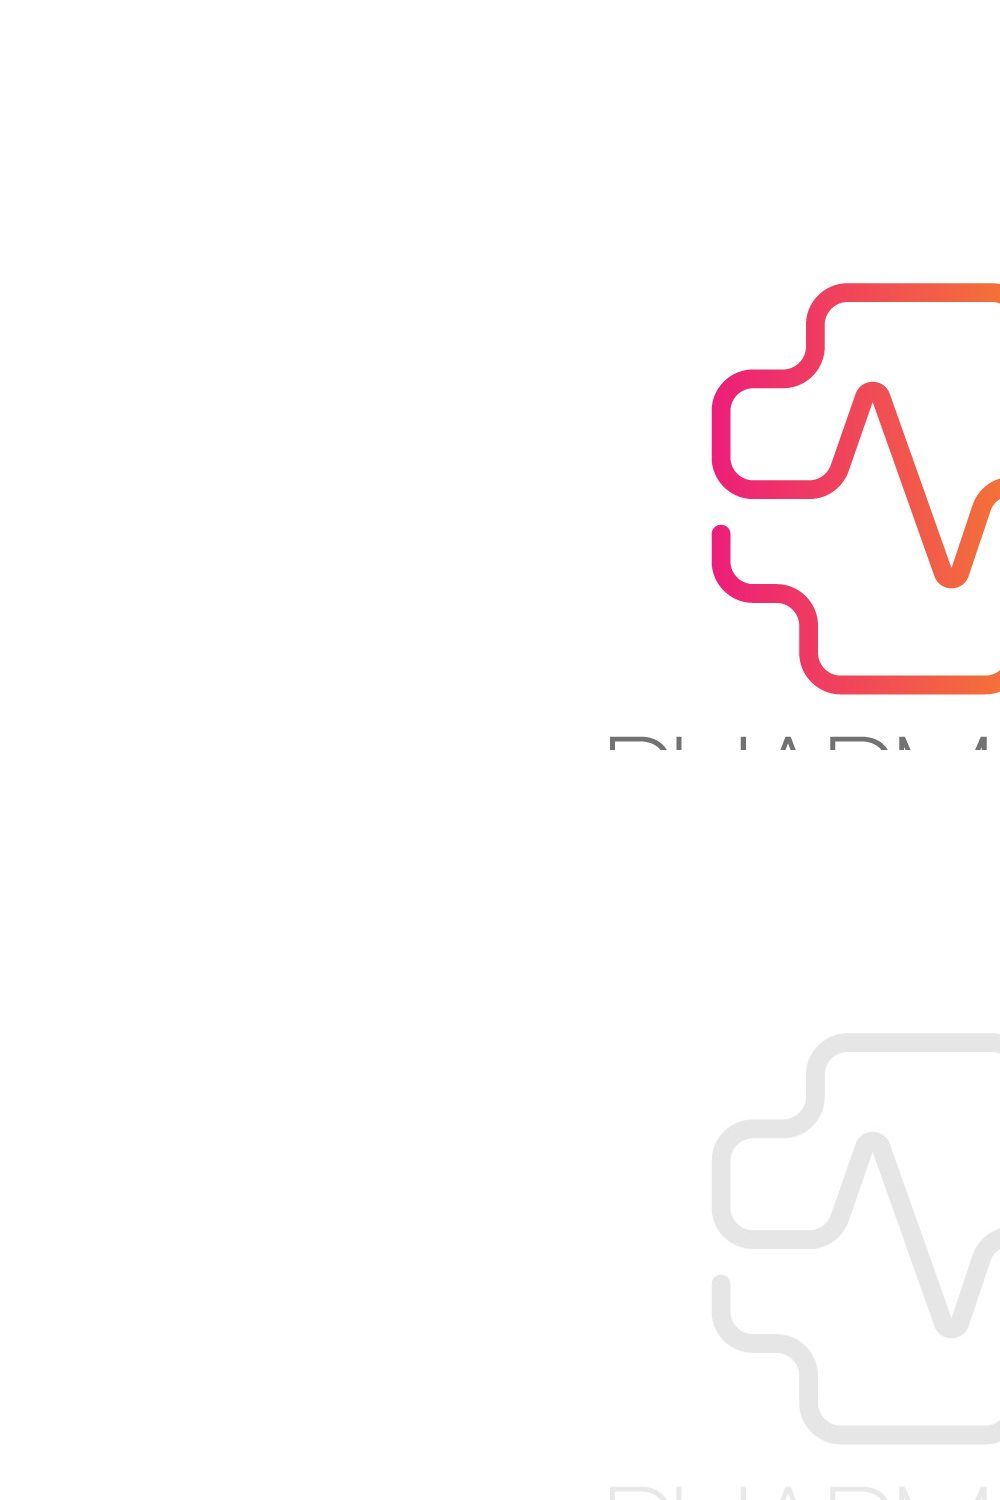 Pharmacy logo, Medical logo pinterest preview image.